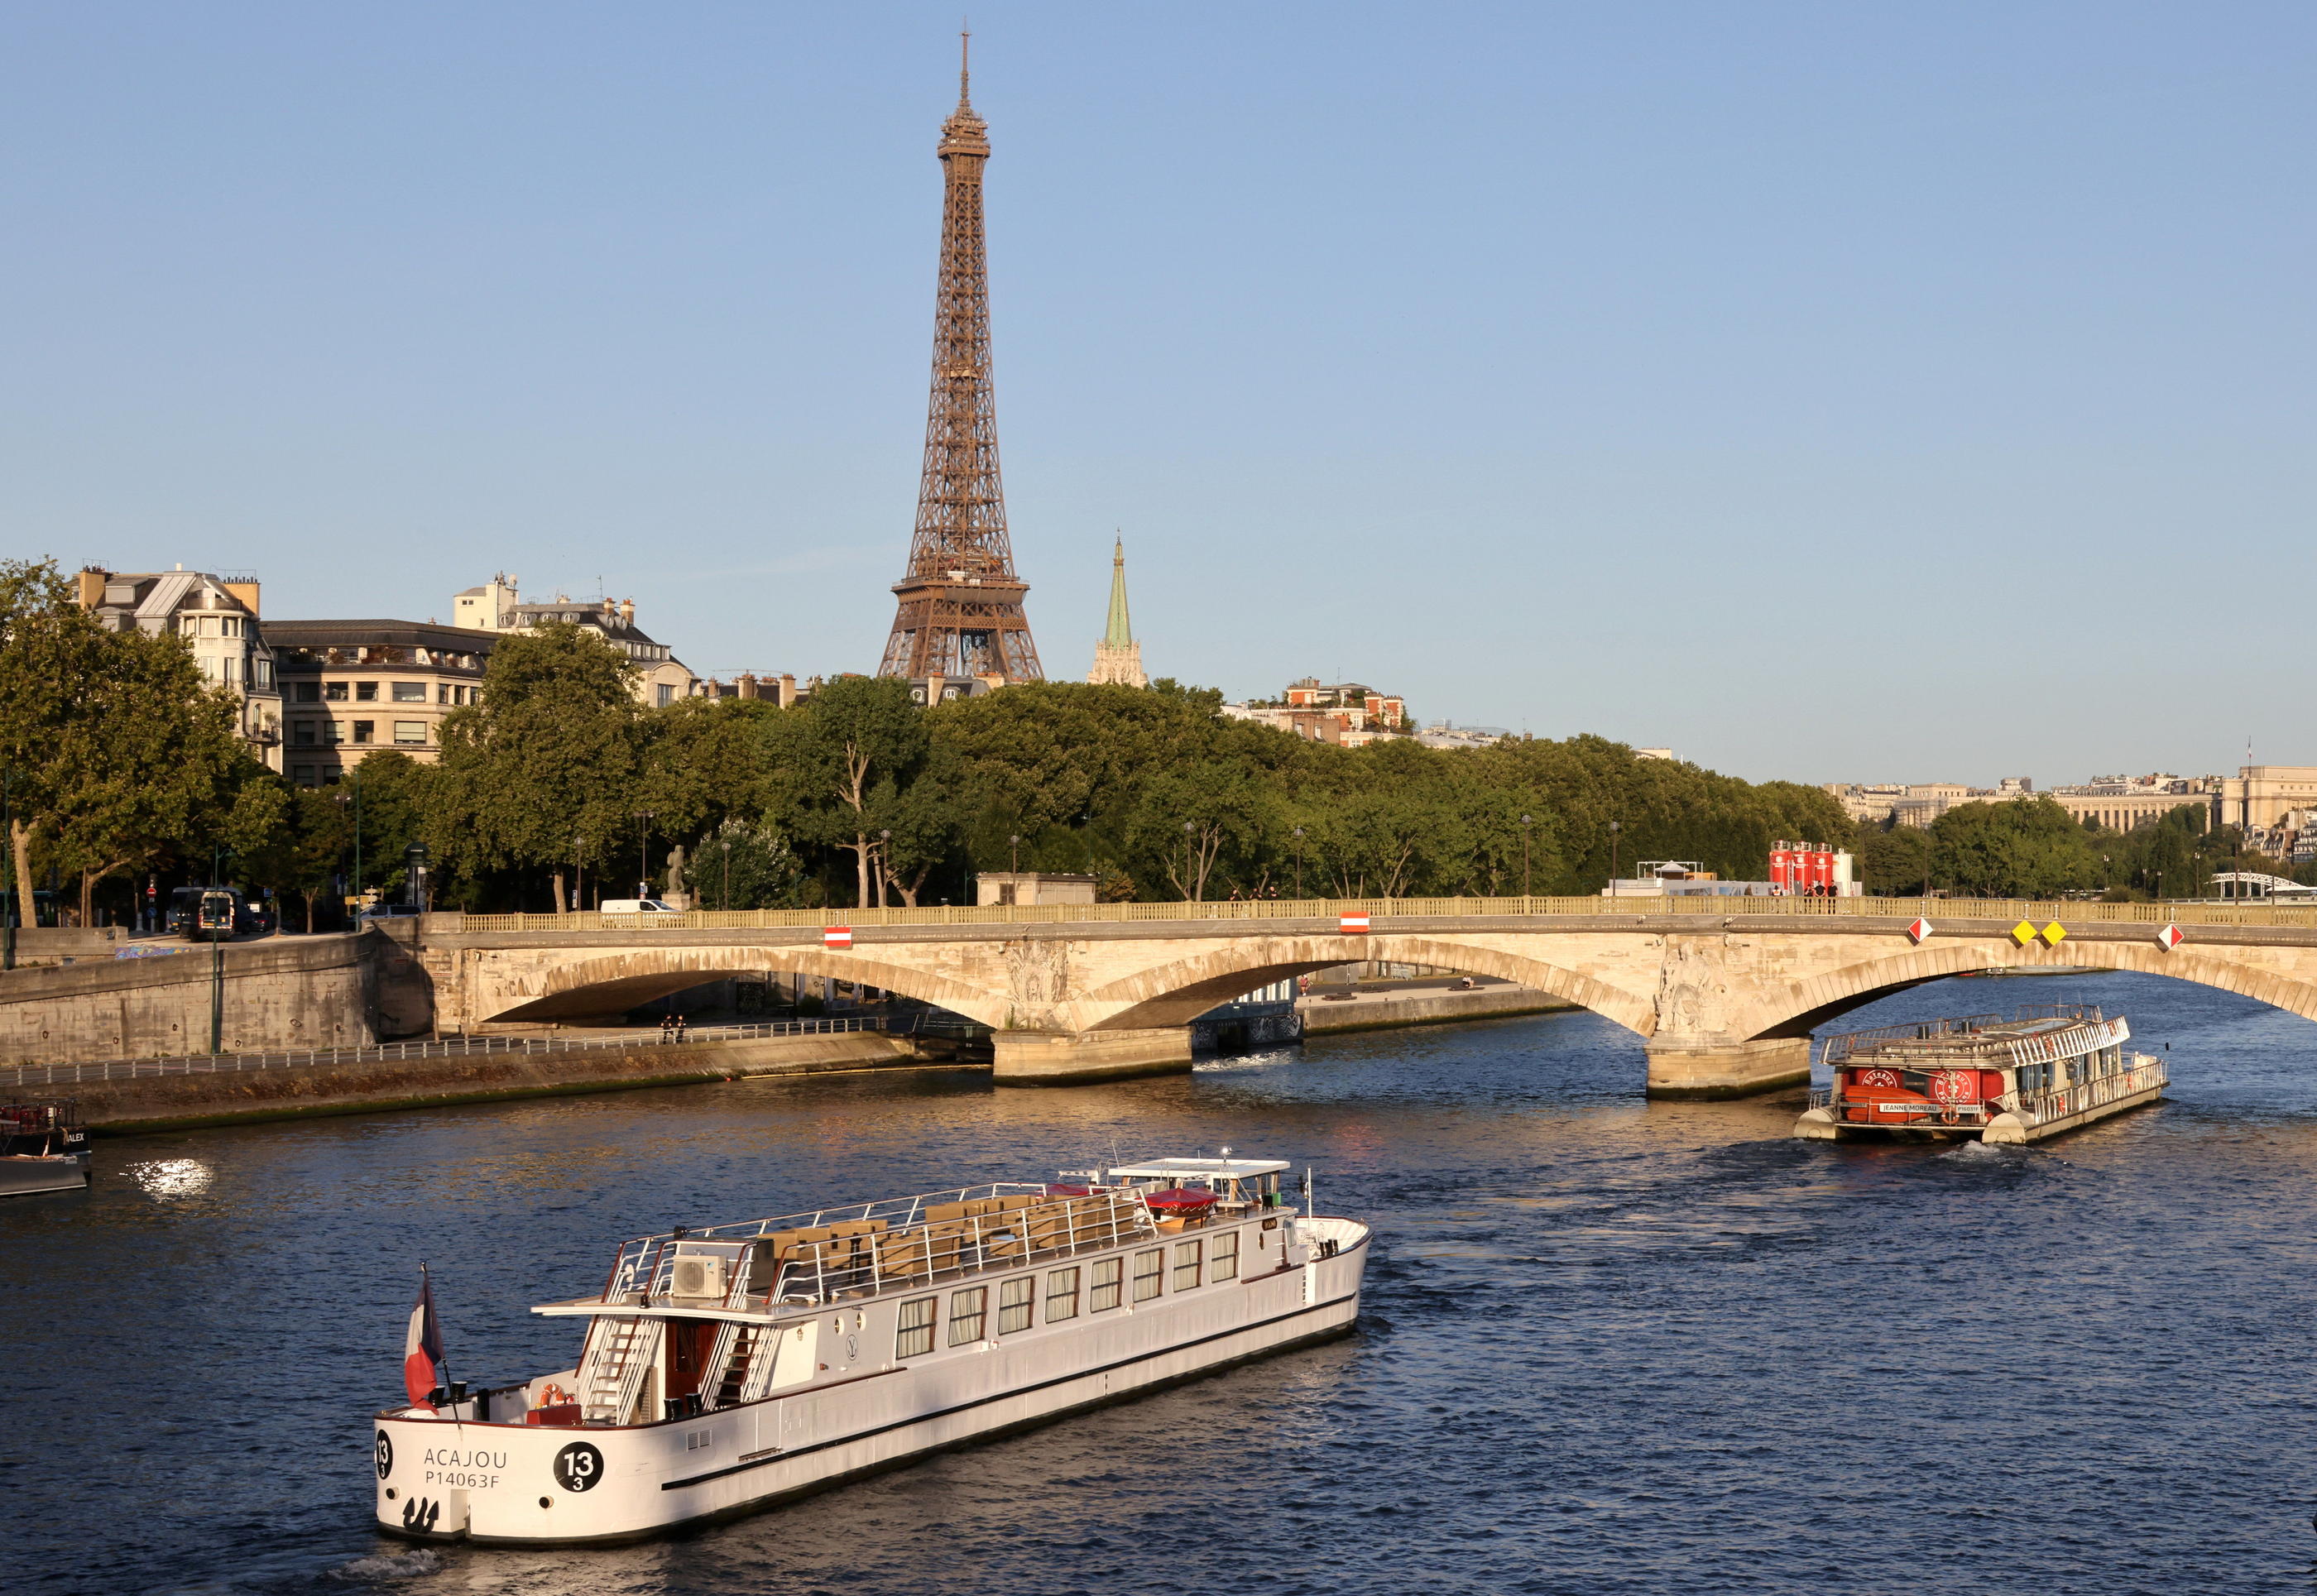 Une première répétition de la cérémonie d'ouverture, avec un convoi de bateaux sur la Seine, avait eu lieu en juillet 2023. LP/Delphine Goldsztejn